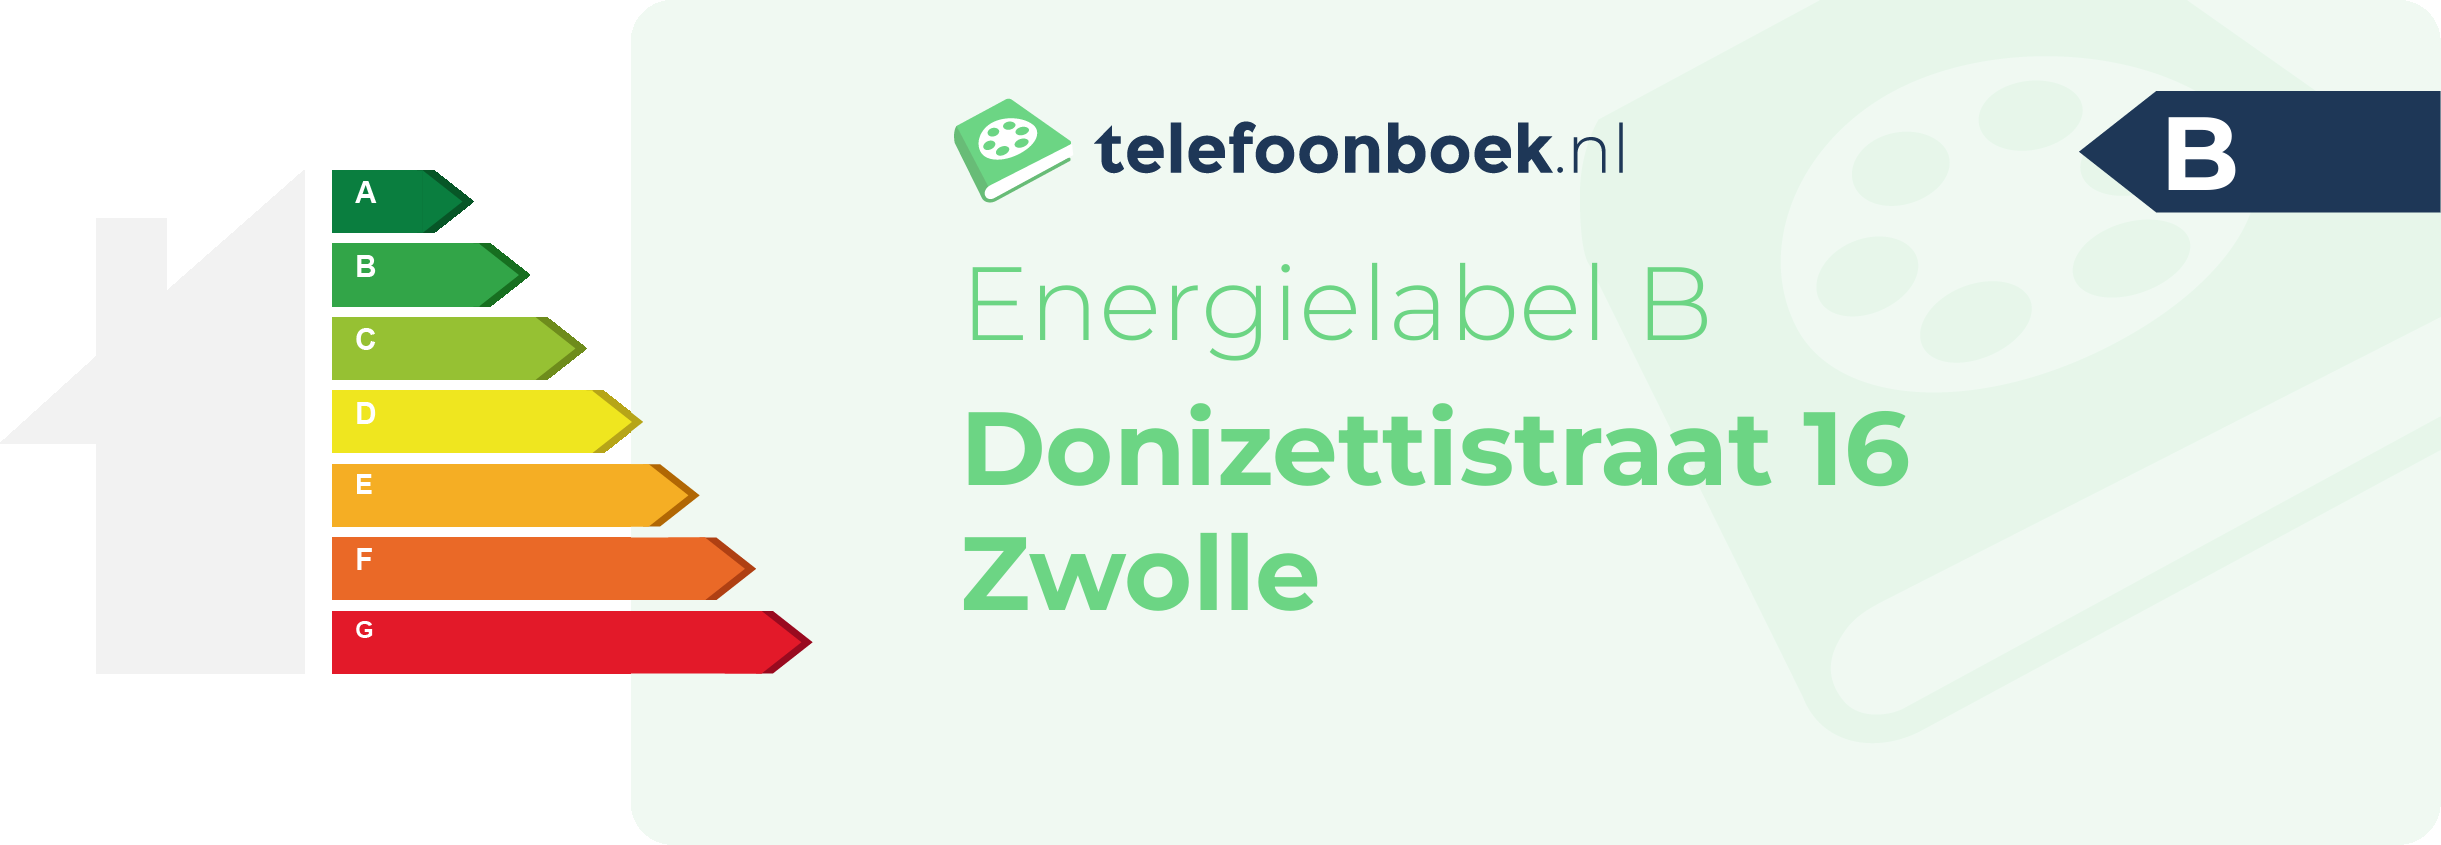 Energielabel Donizettistraat 16 Zwolle